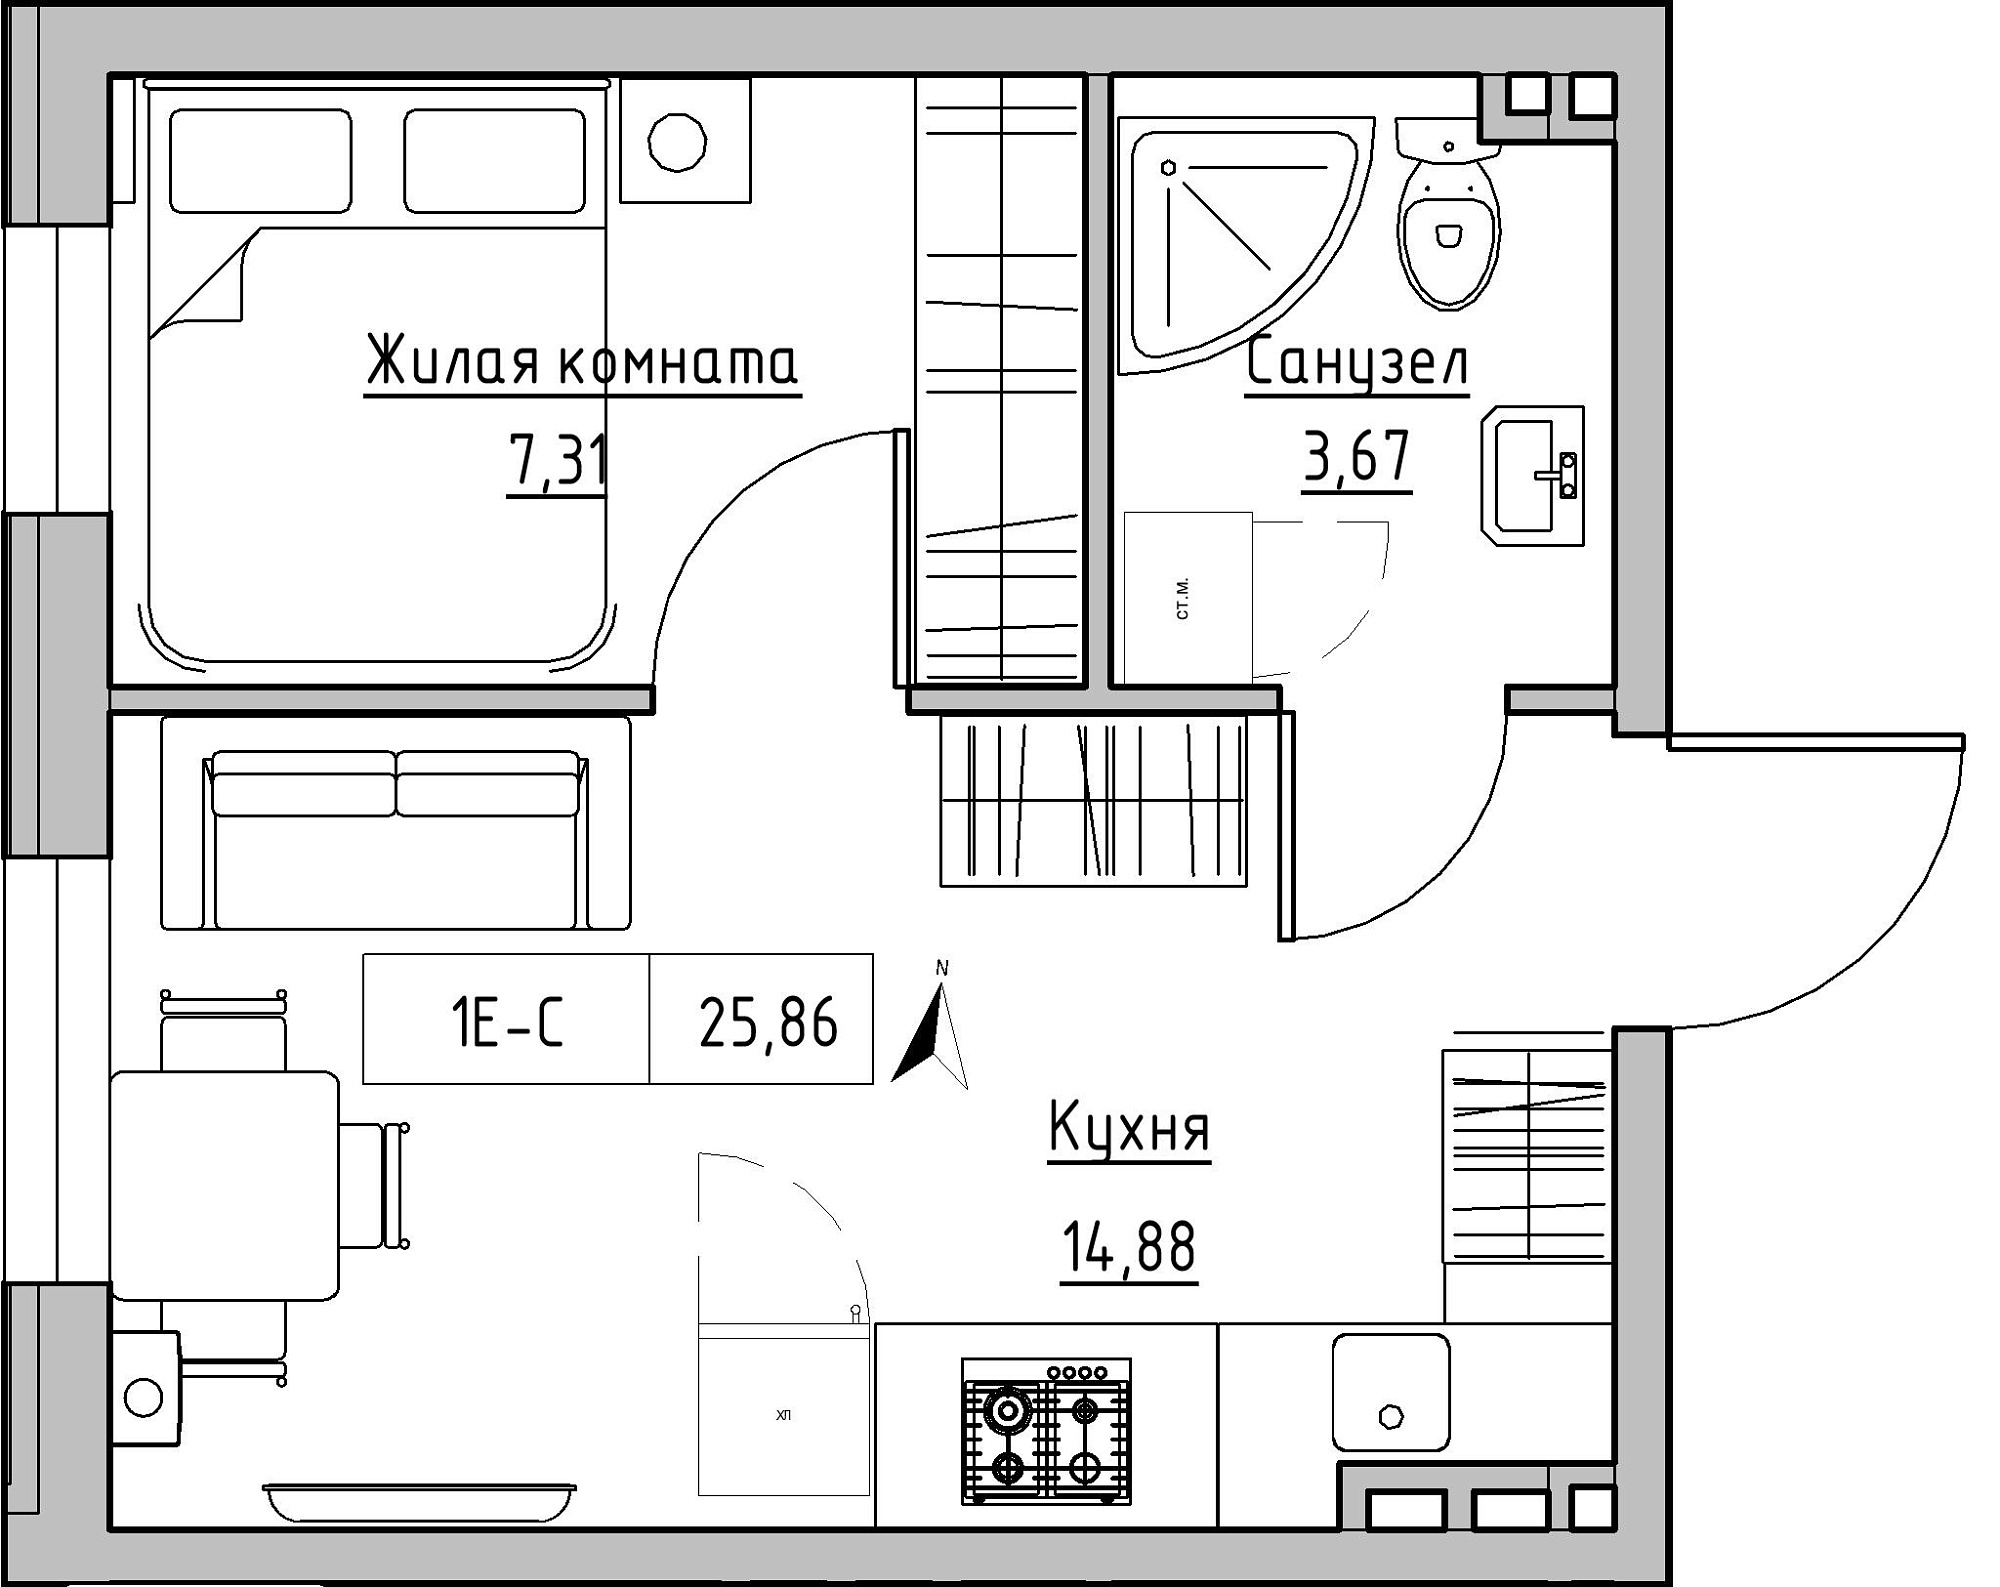 Планування 1-к квартира площею 25.86м2, KS-024-02/0012.